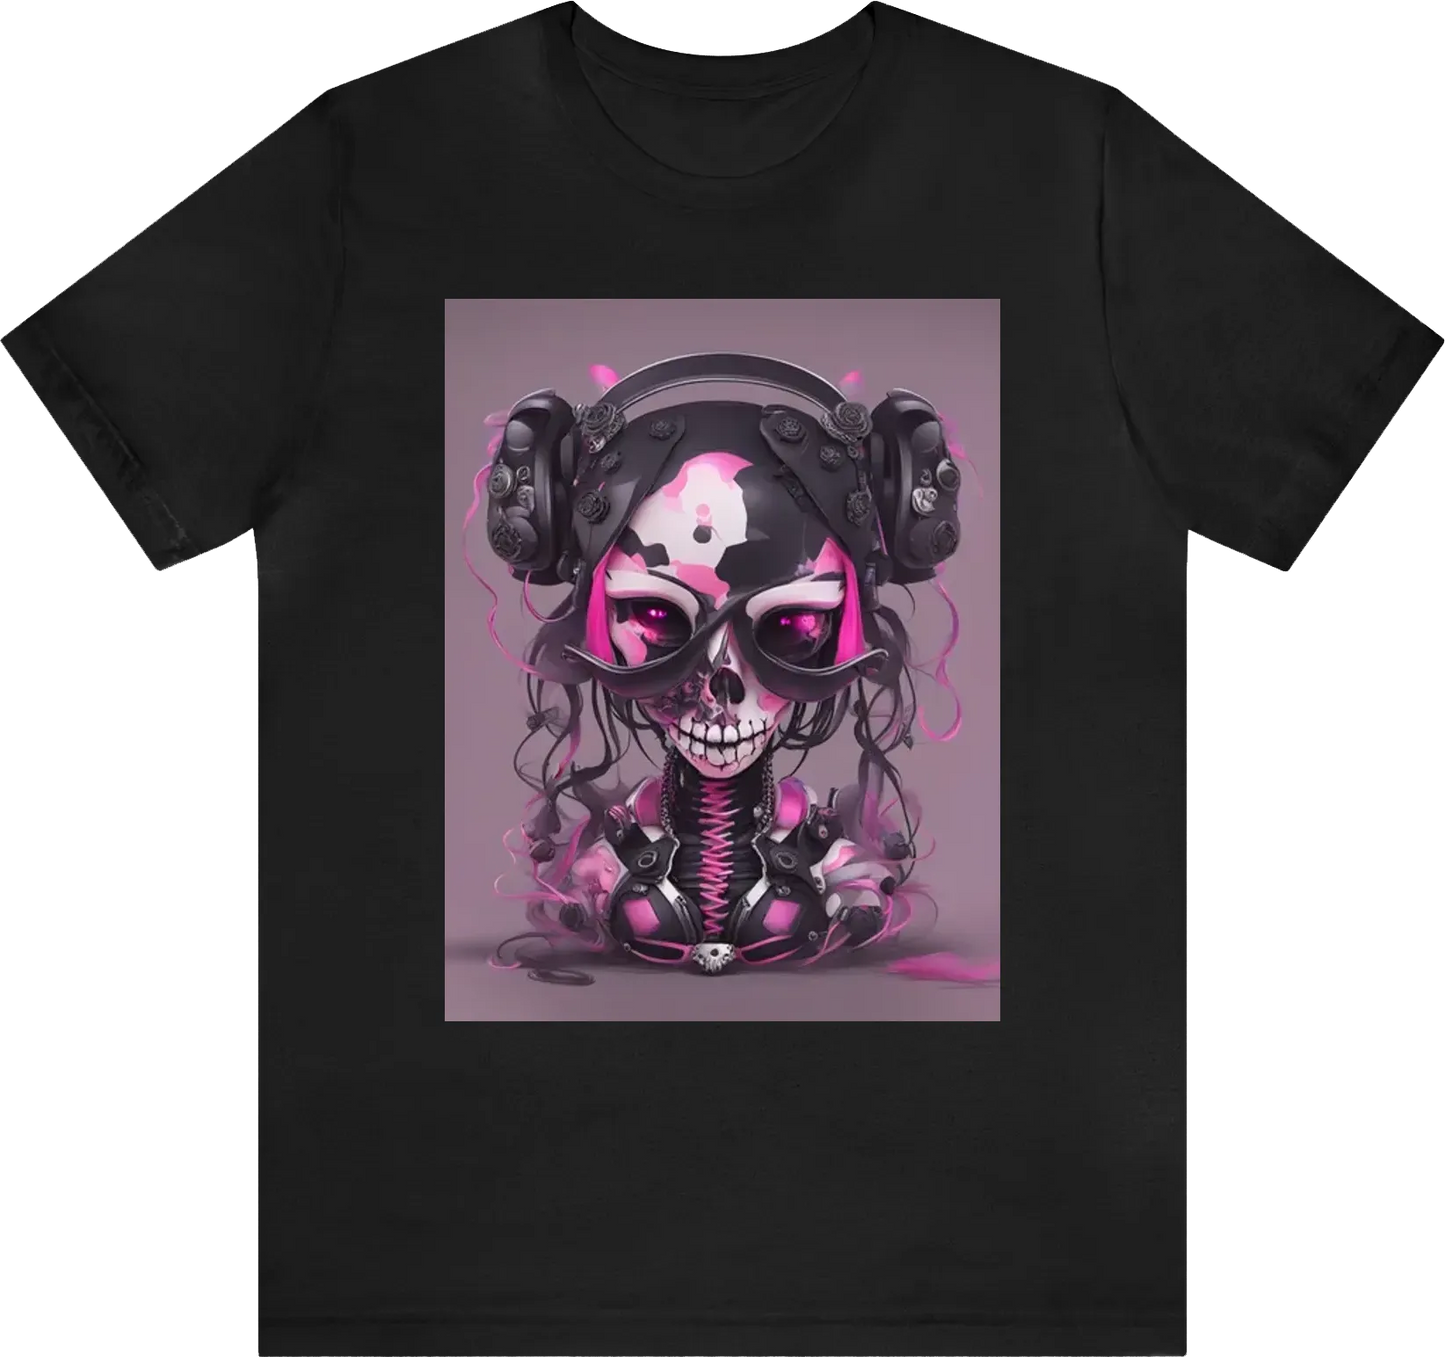 Pinkdoll techno skull girl dark